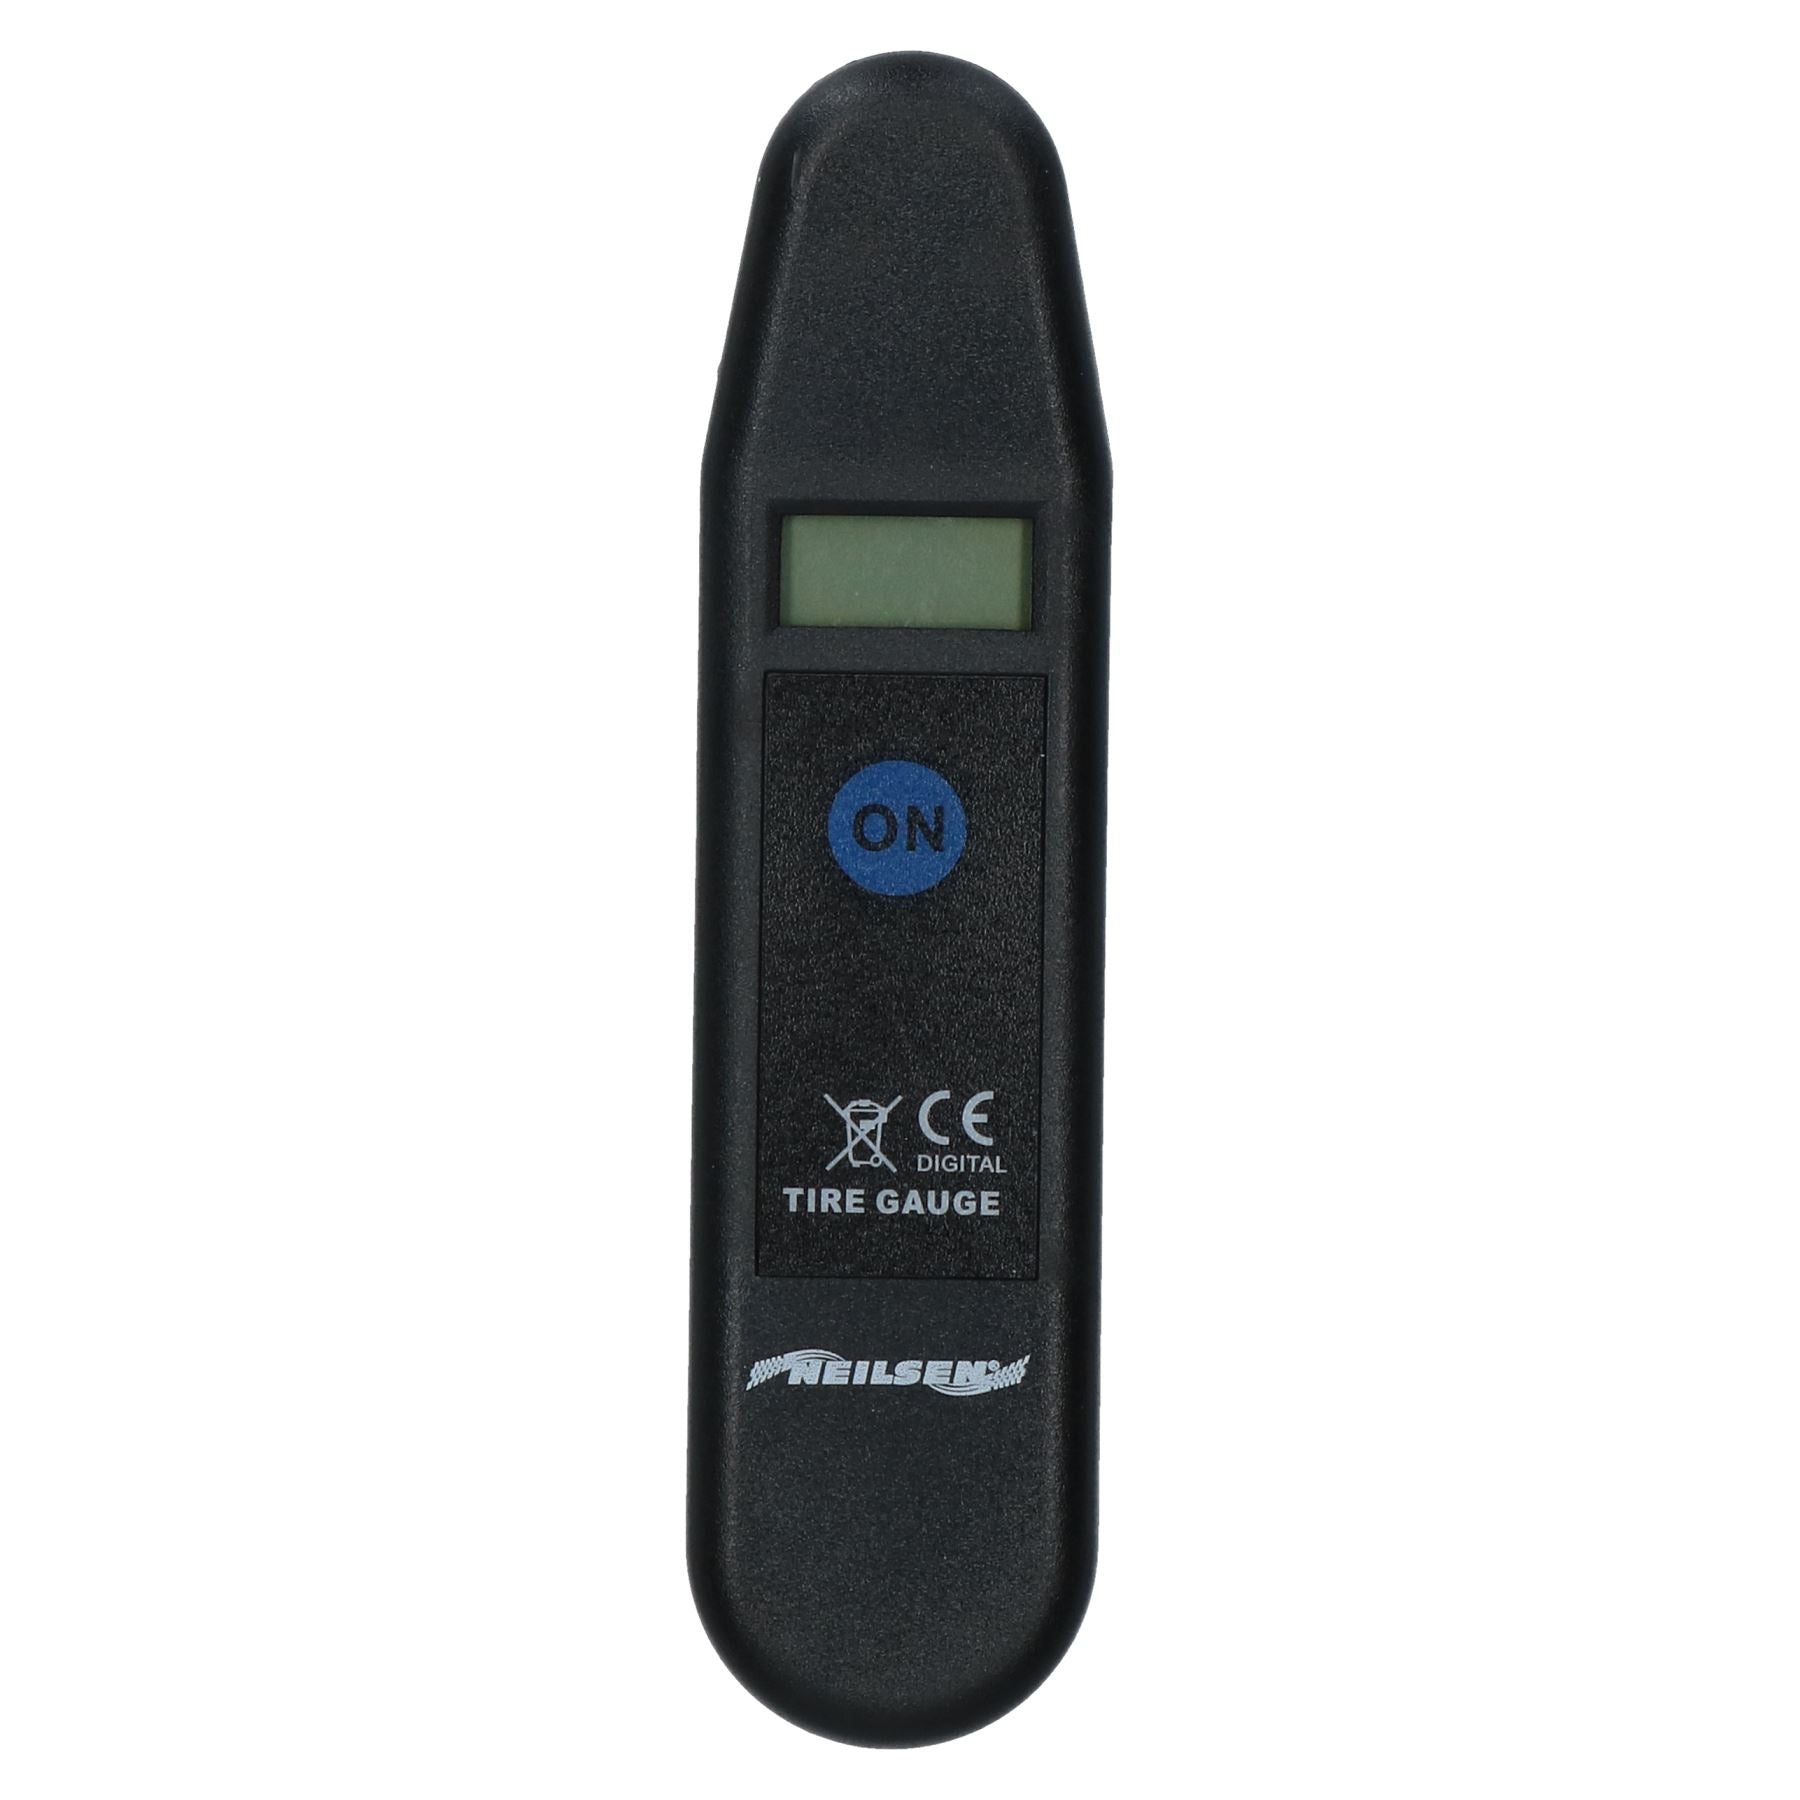 Digital Handheld Tyre Pressure Gauge for Measuring Tyre Wheel Air 0 - 100psi